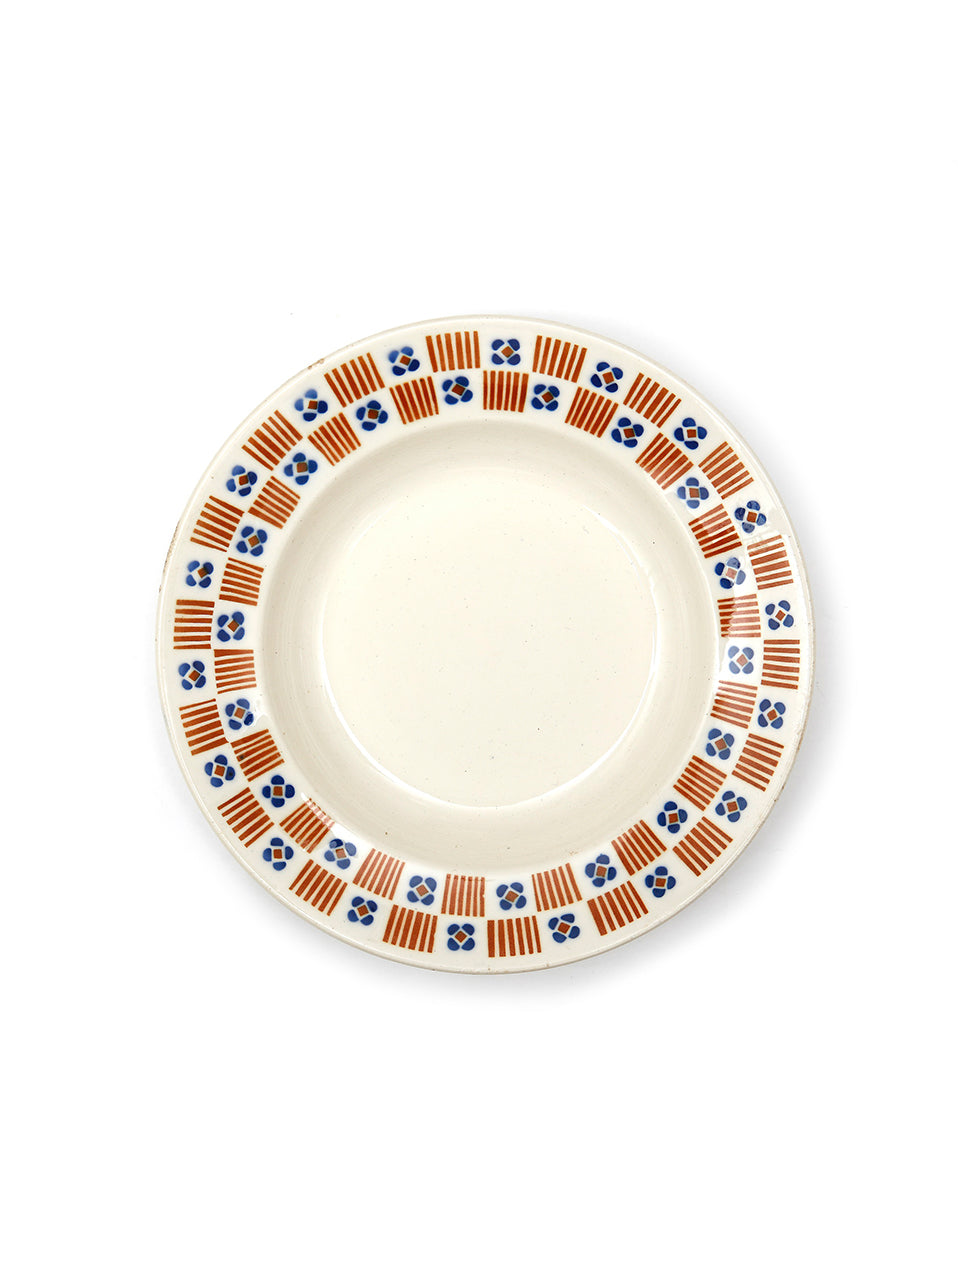 Vintage Decorative Hollow Plates - Checkboard - Mondo Corsini